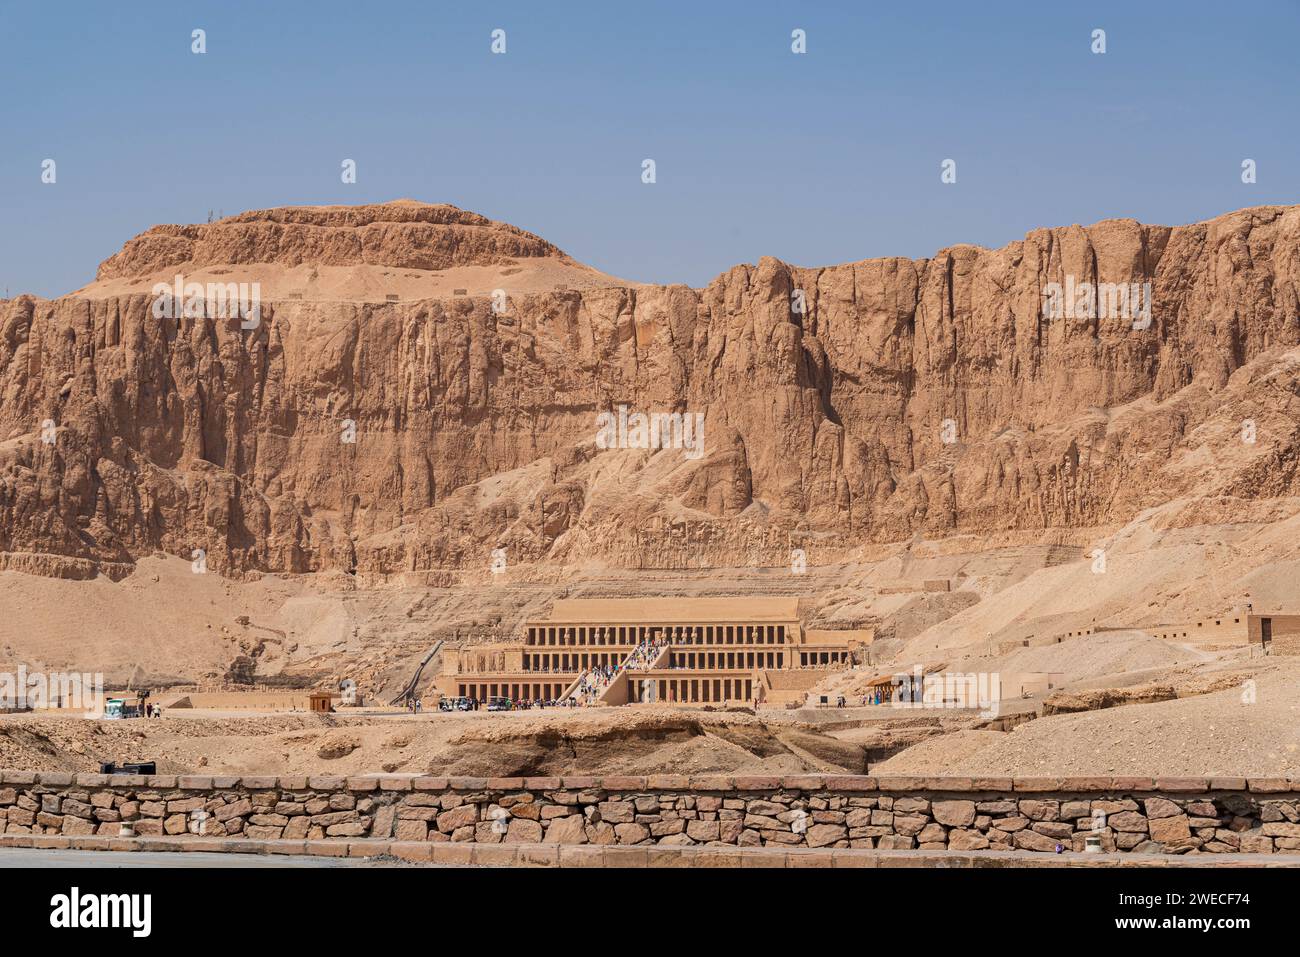 Il tempio funerario di Hatshepsut in Egitto: Una testimonianza della brillantezza architettonica e dell'eredità storica del faraone femminile di Luxor. Foto Stock